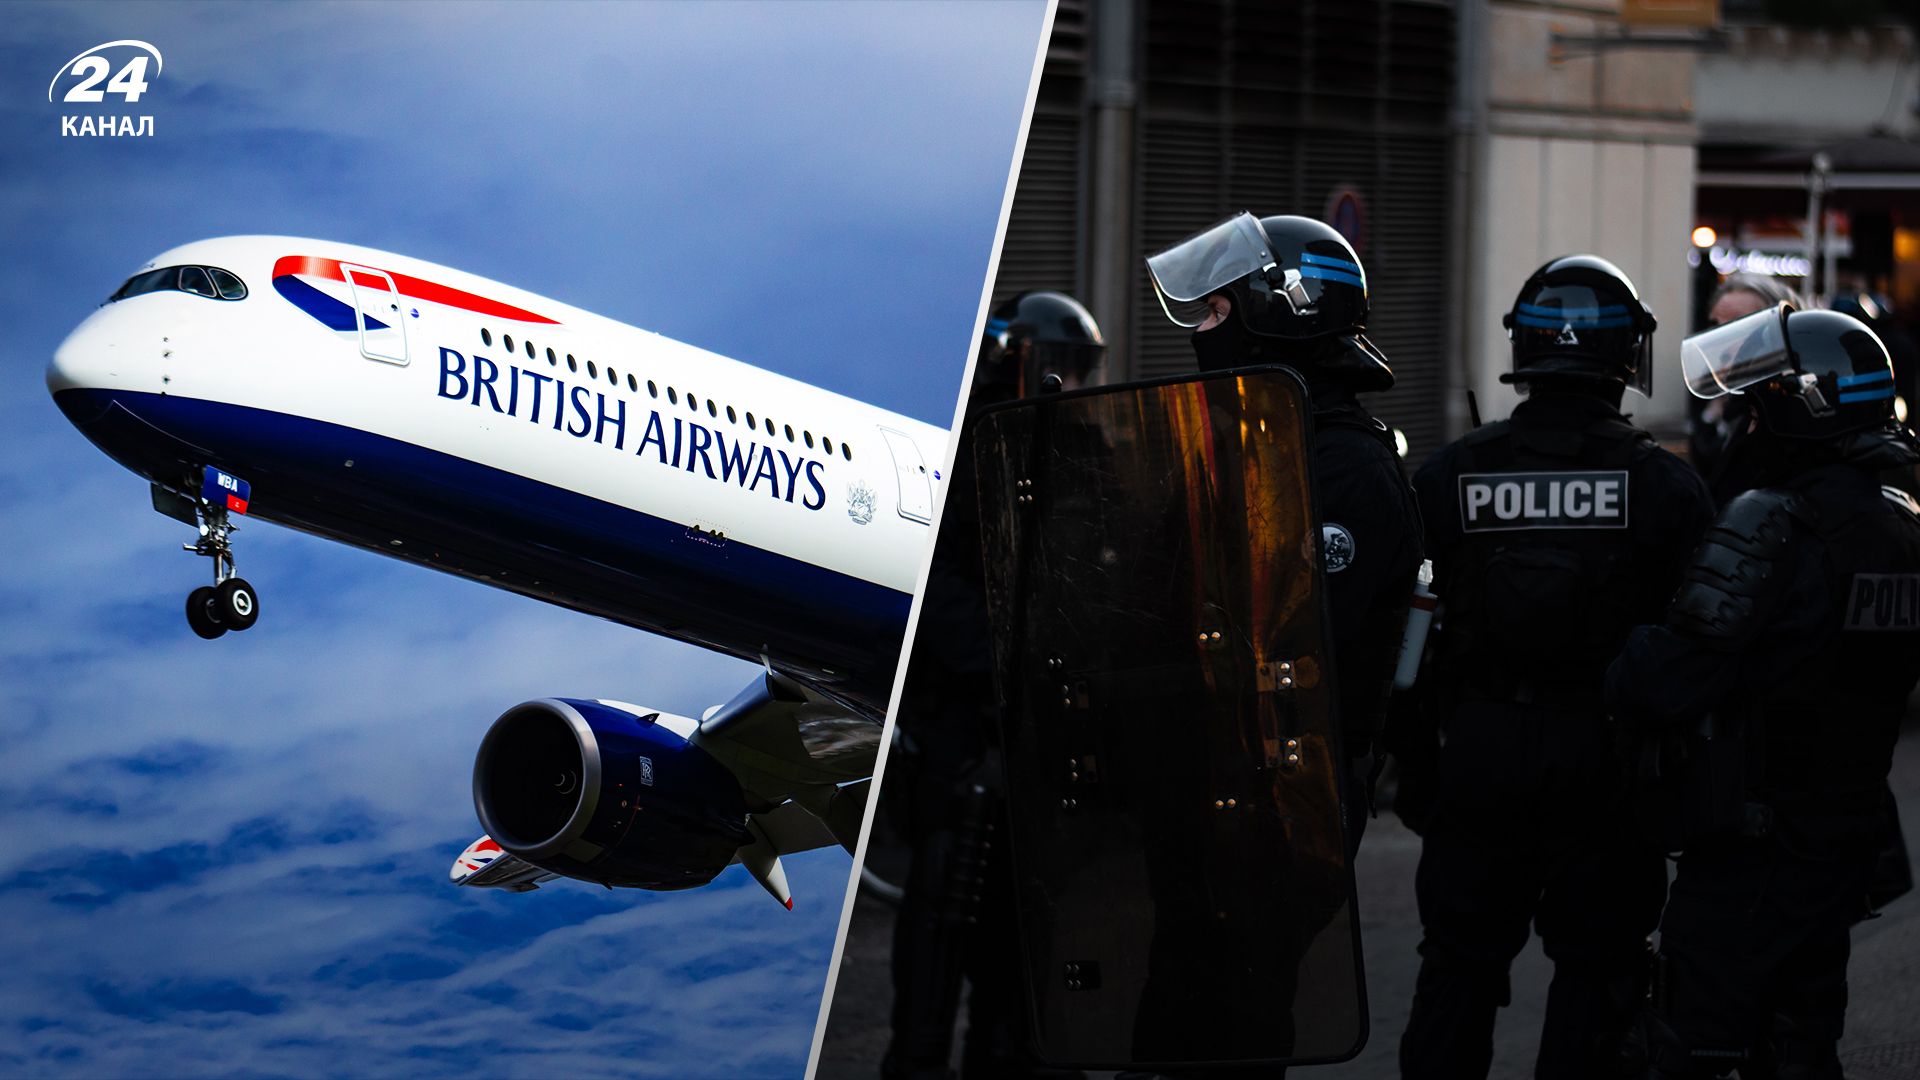 Сотрудники British Airways всю ночь пили и употребляли наркотики